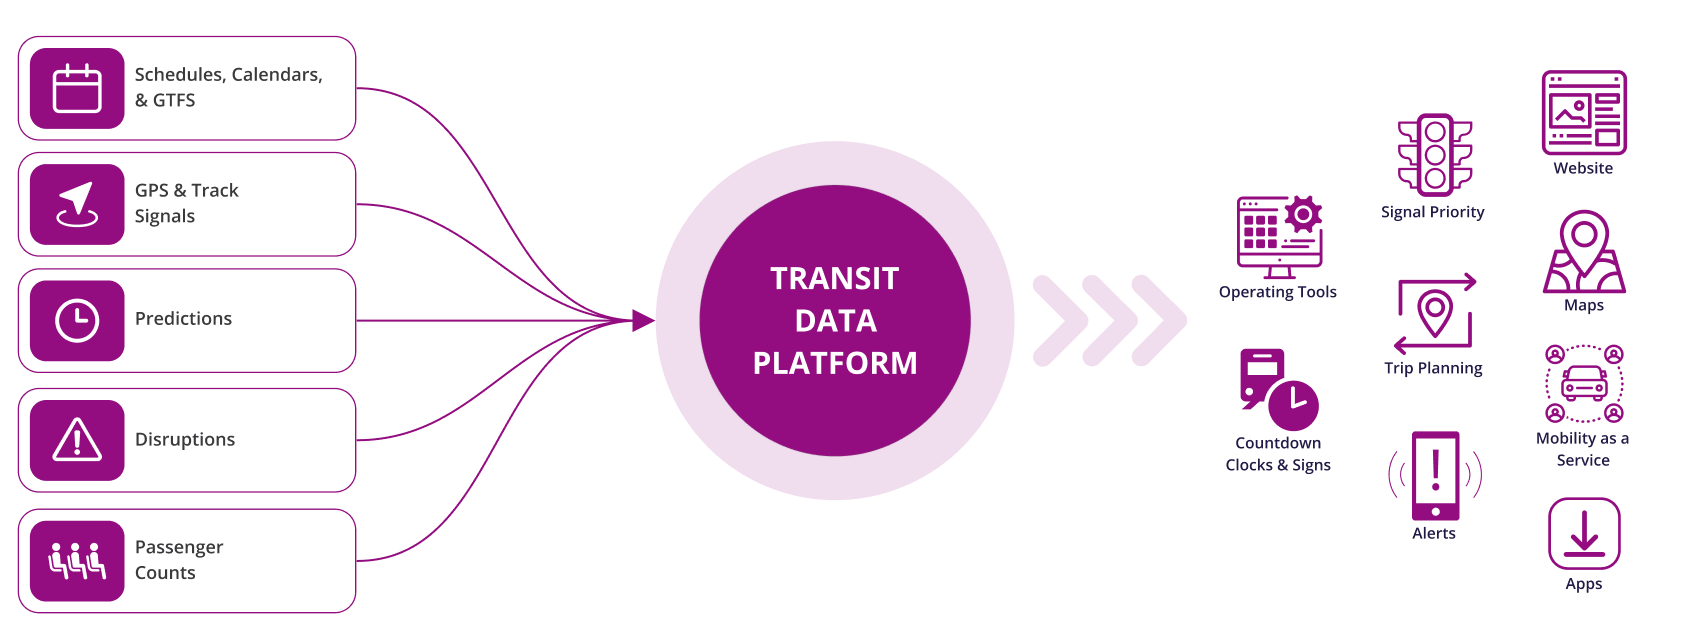 Transit Data Platform